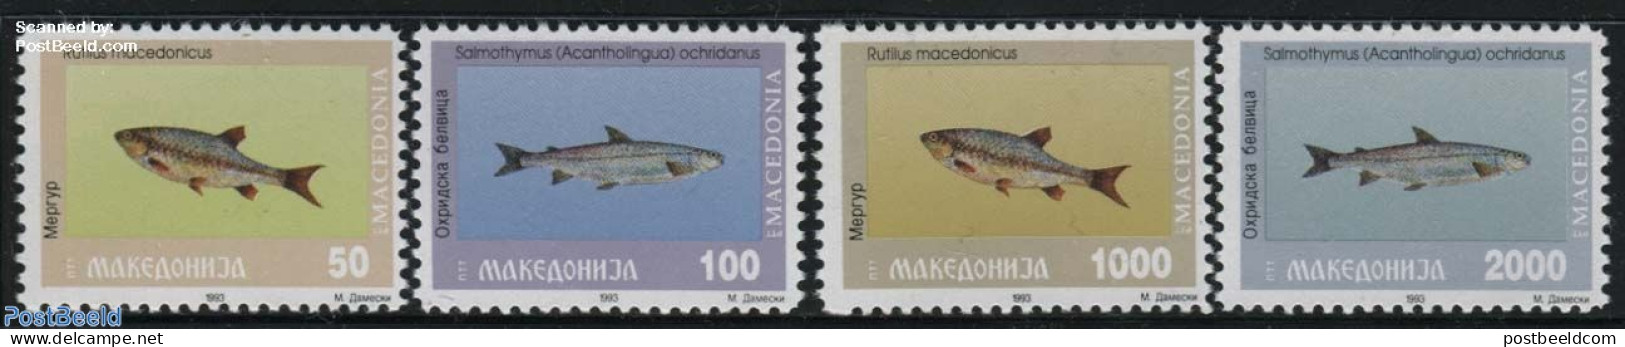 North Macedonia 1993 Fish 4v, Mint NH, Nature - Fish - Fishes